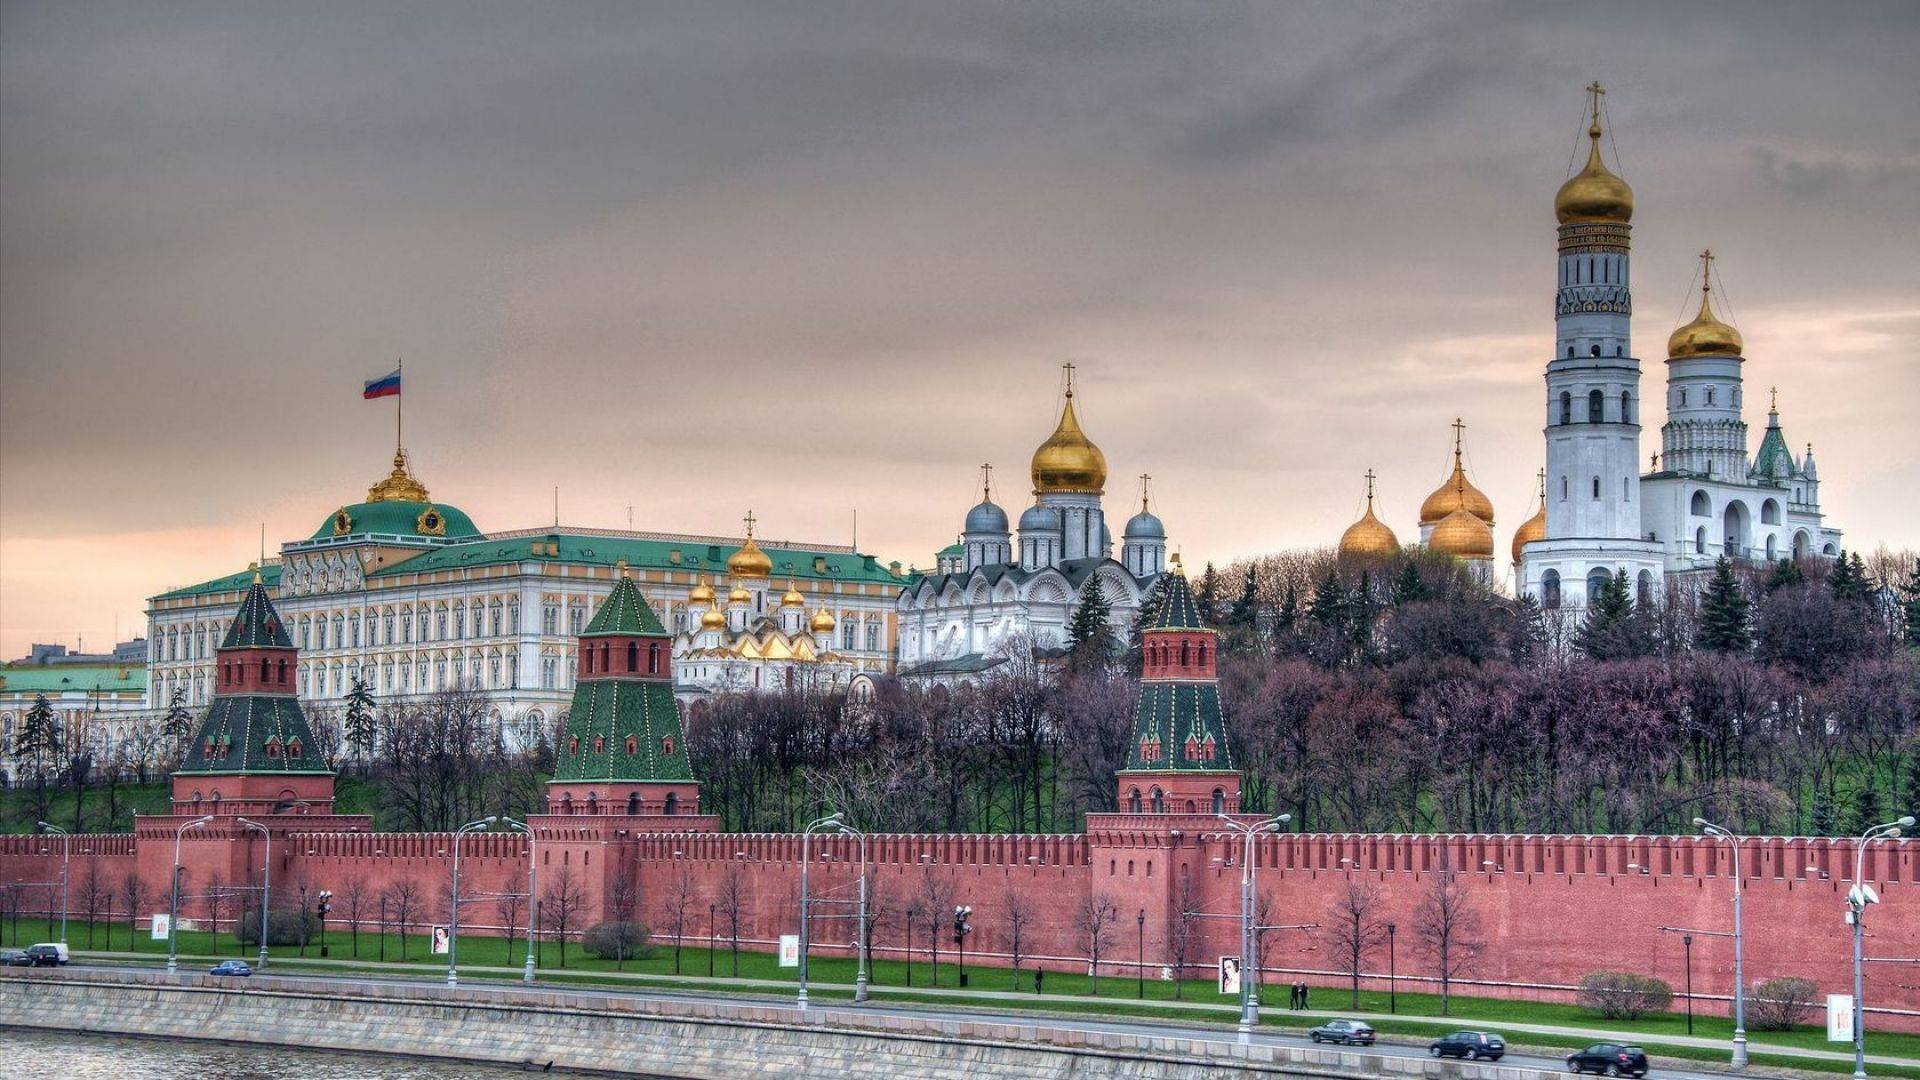 Самые известные кремли (крепости) россии: список, описание